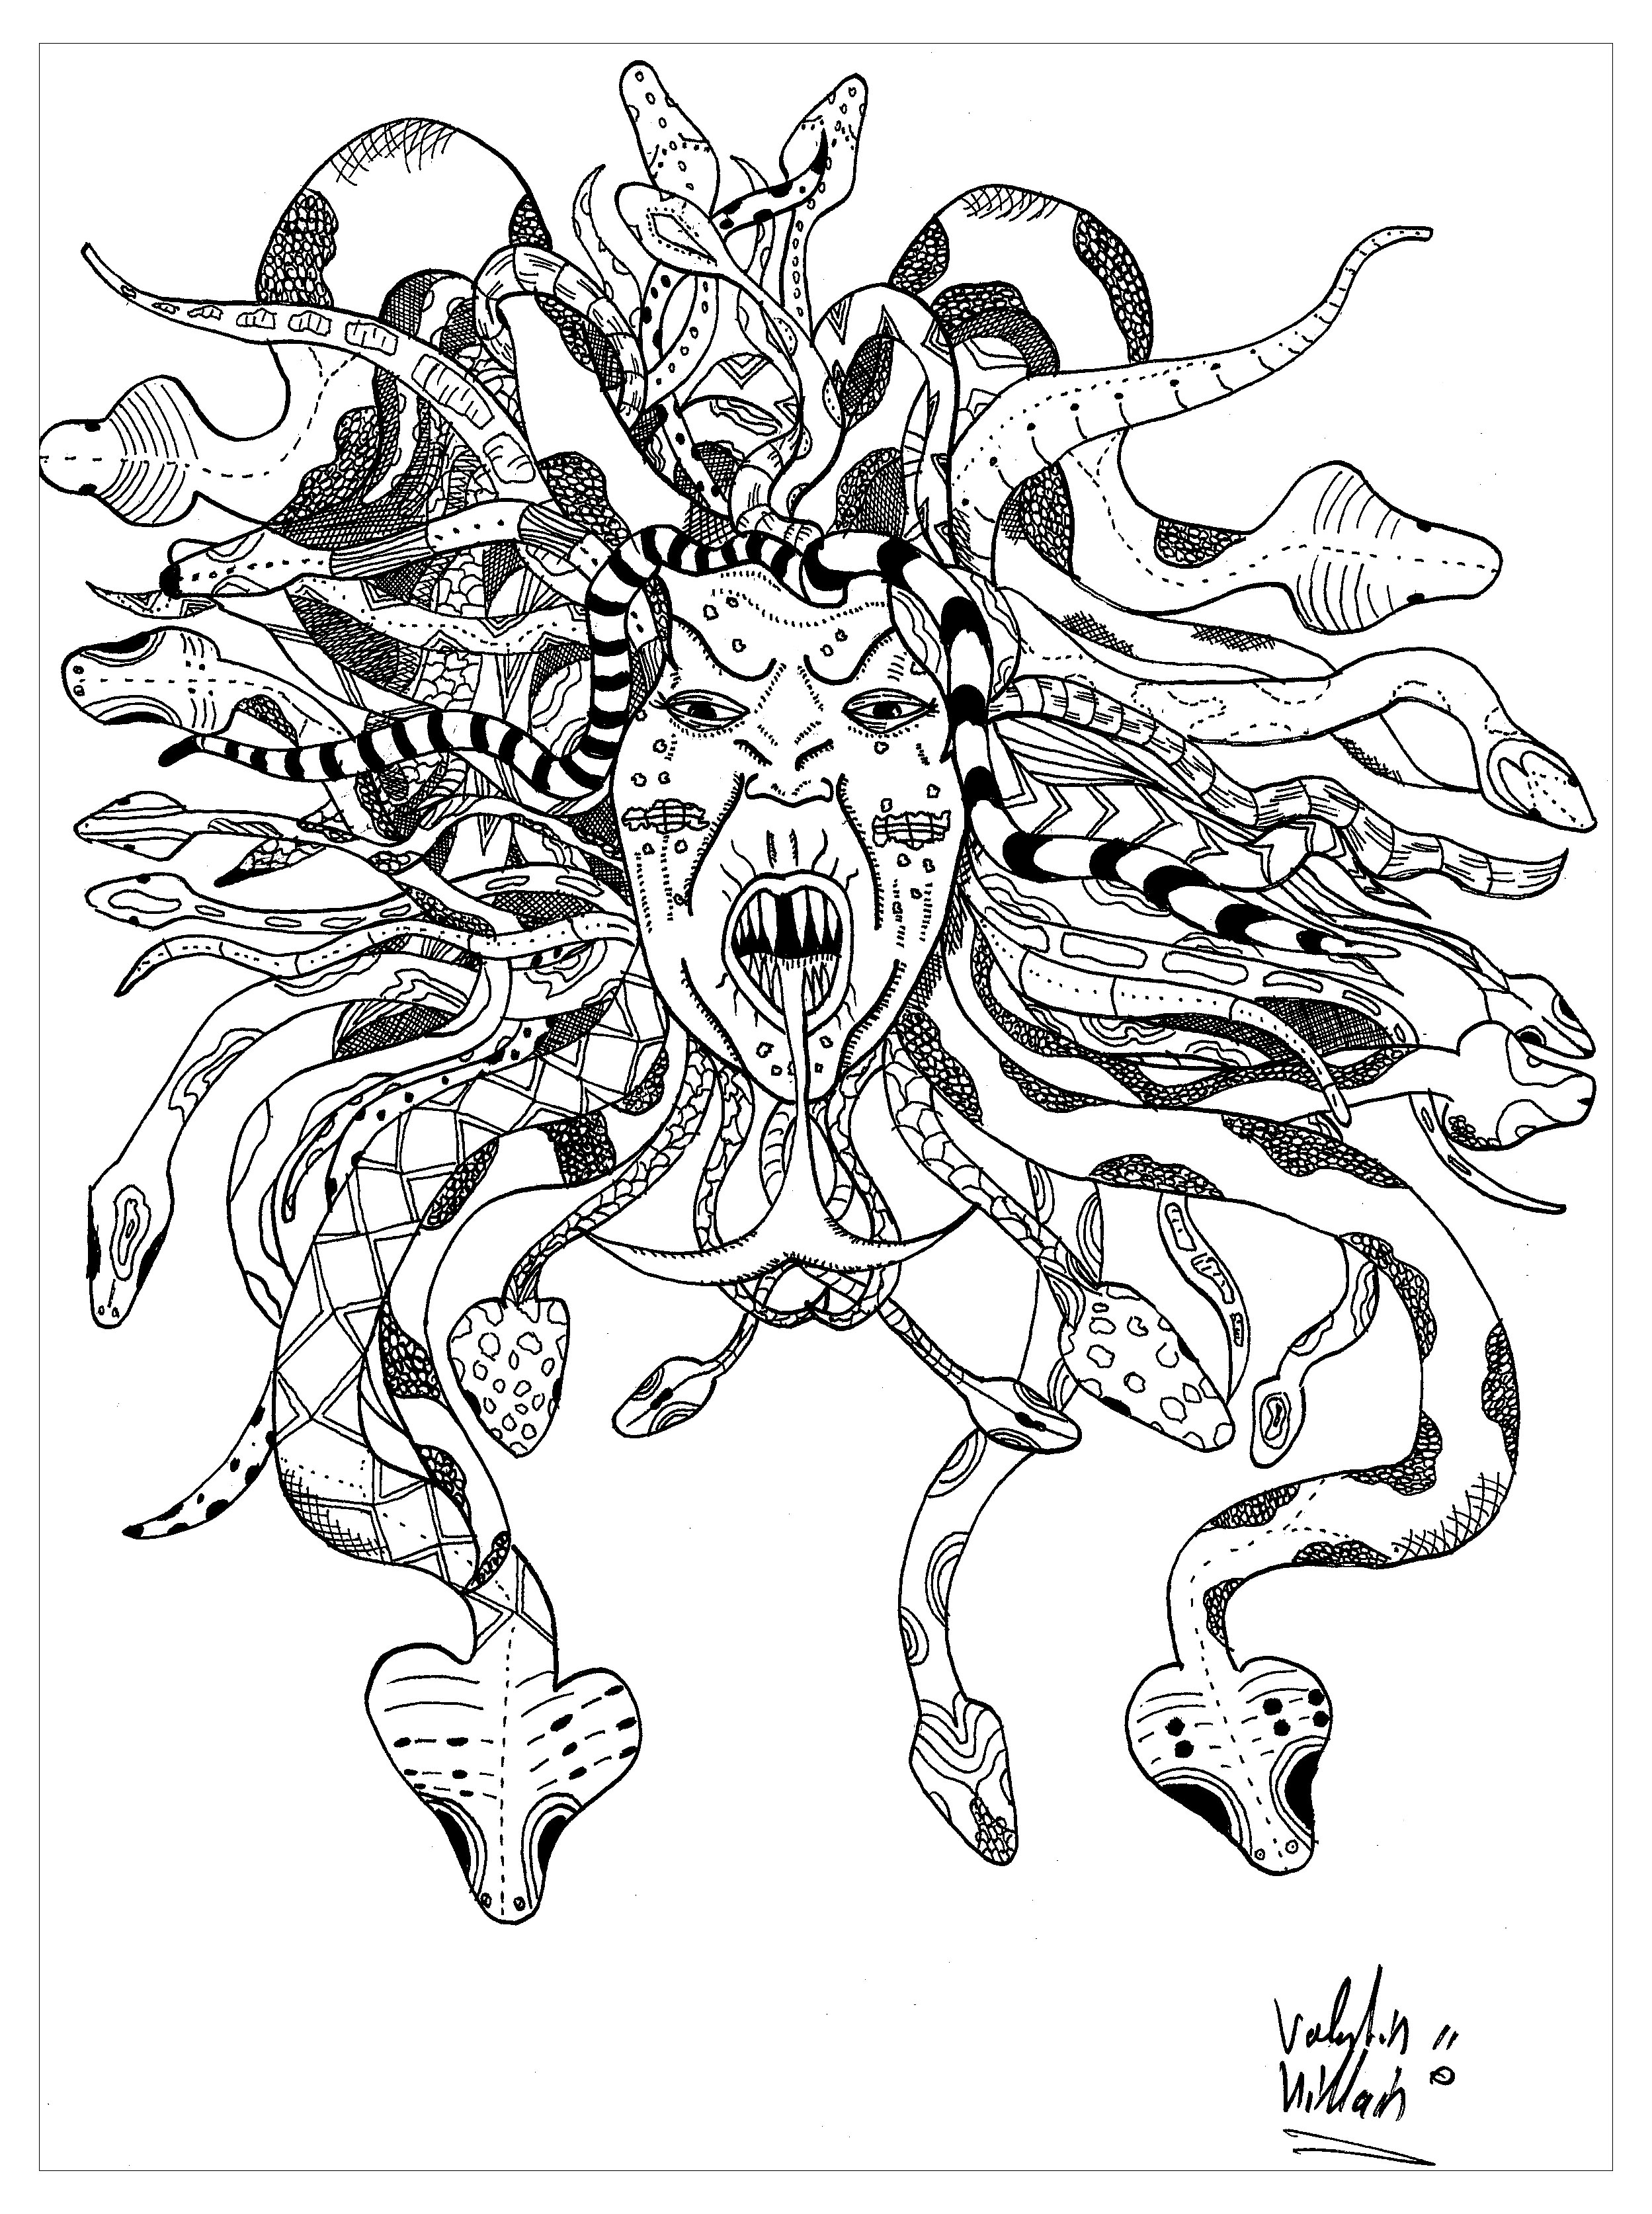 Colorear representando a Medusa. He aquí una magnífica representación de la mítica Gorgona Medusa. Su rostro está rodeado por una melena entrelazada con serpientes, lo que le confiere un aspecto terrorífico.